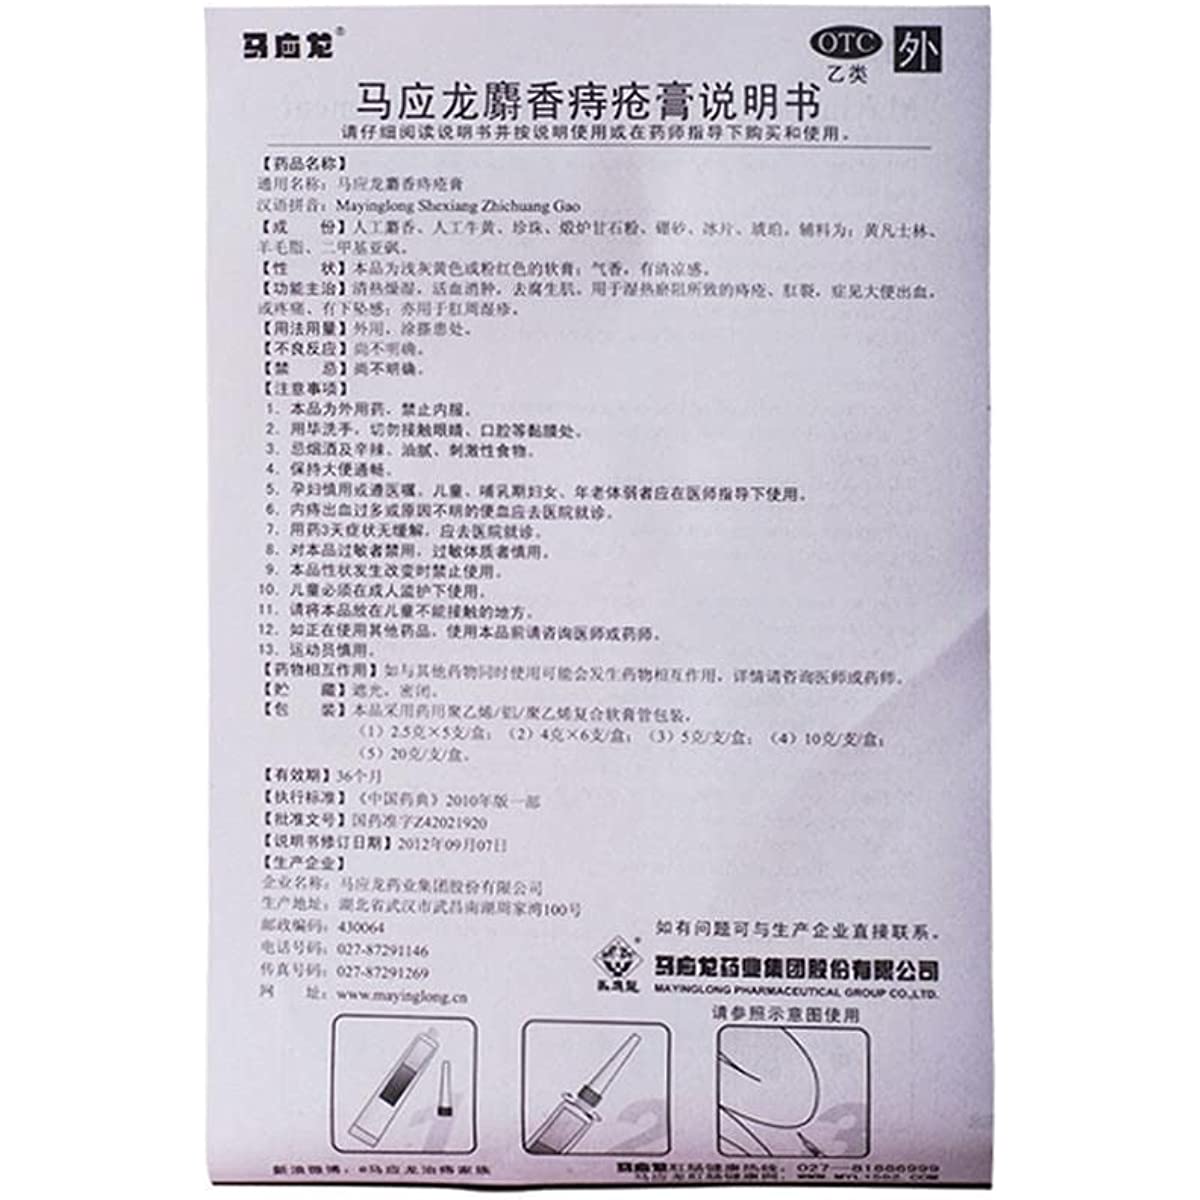 2 Boxes Shexiangzhichuang Gao 6 Tubes/Box 痔疮膏